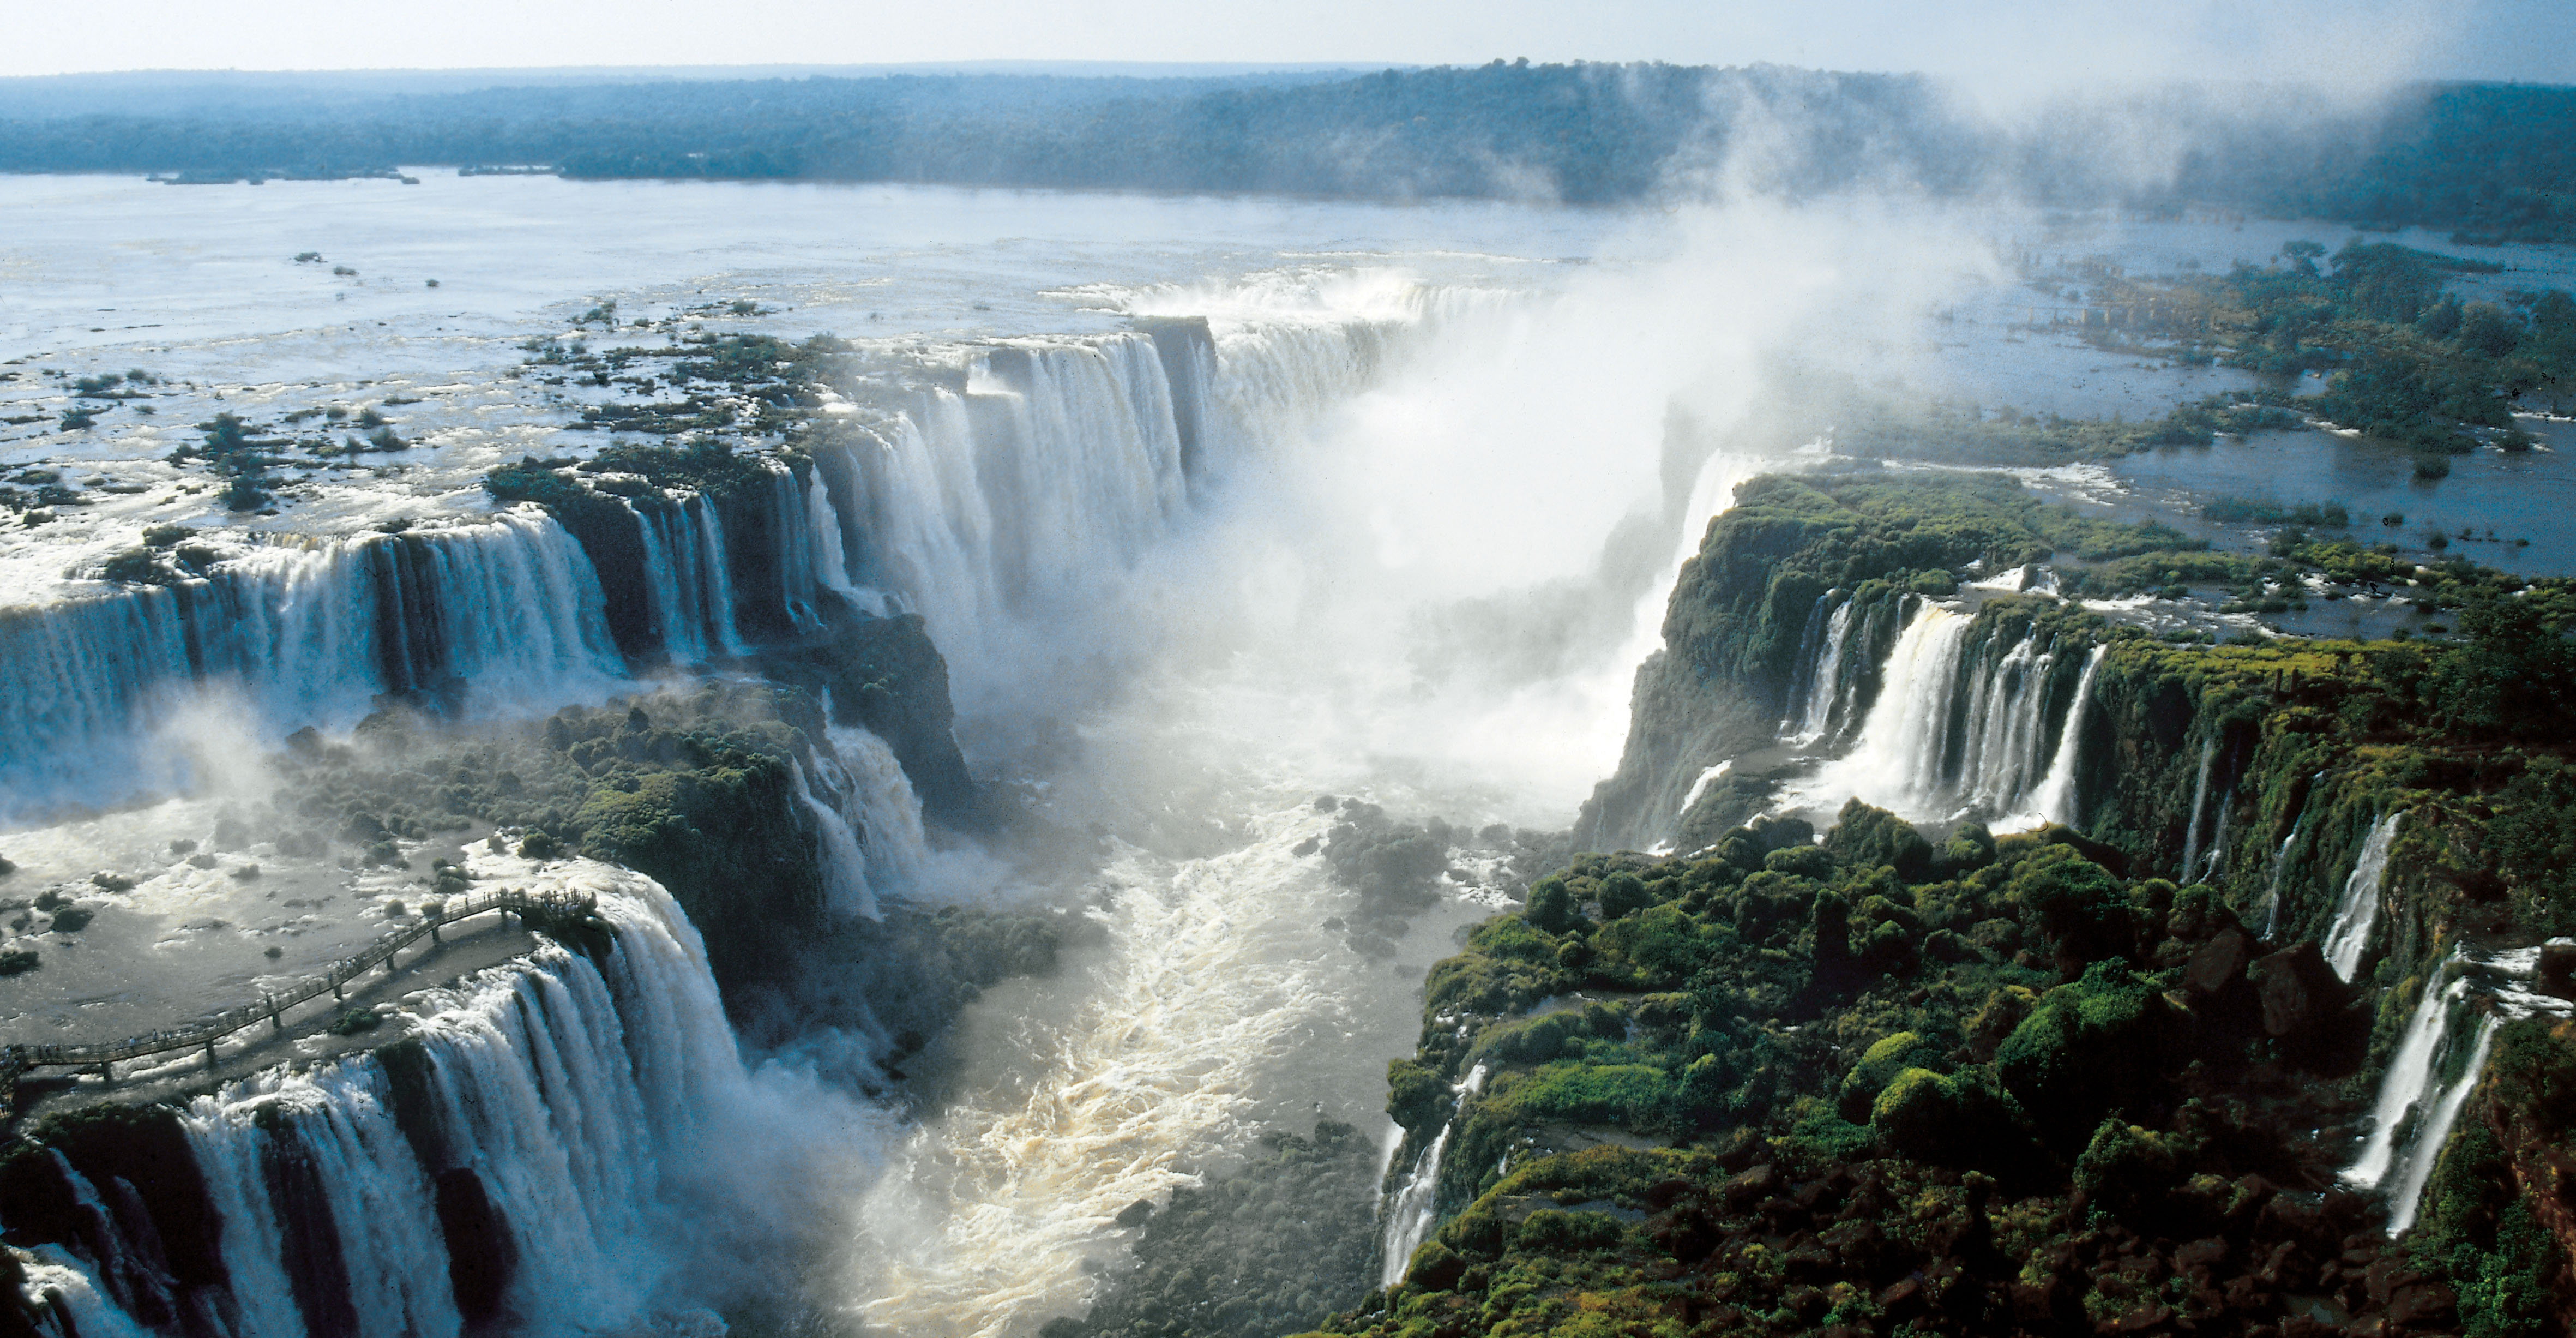 Широкий водопад в южной америке. Водопад Игуасу в Южной Америке. Водопады Игуасу Аргентина Бразилия. Водопады Игуасу достопримечательности Бразилии. Южная Америка бугуасу водопады.